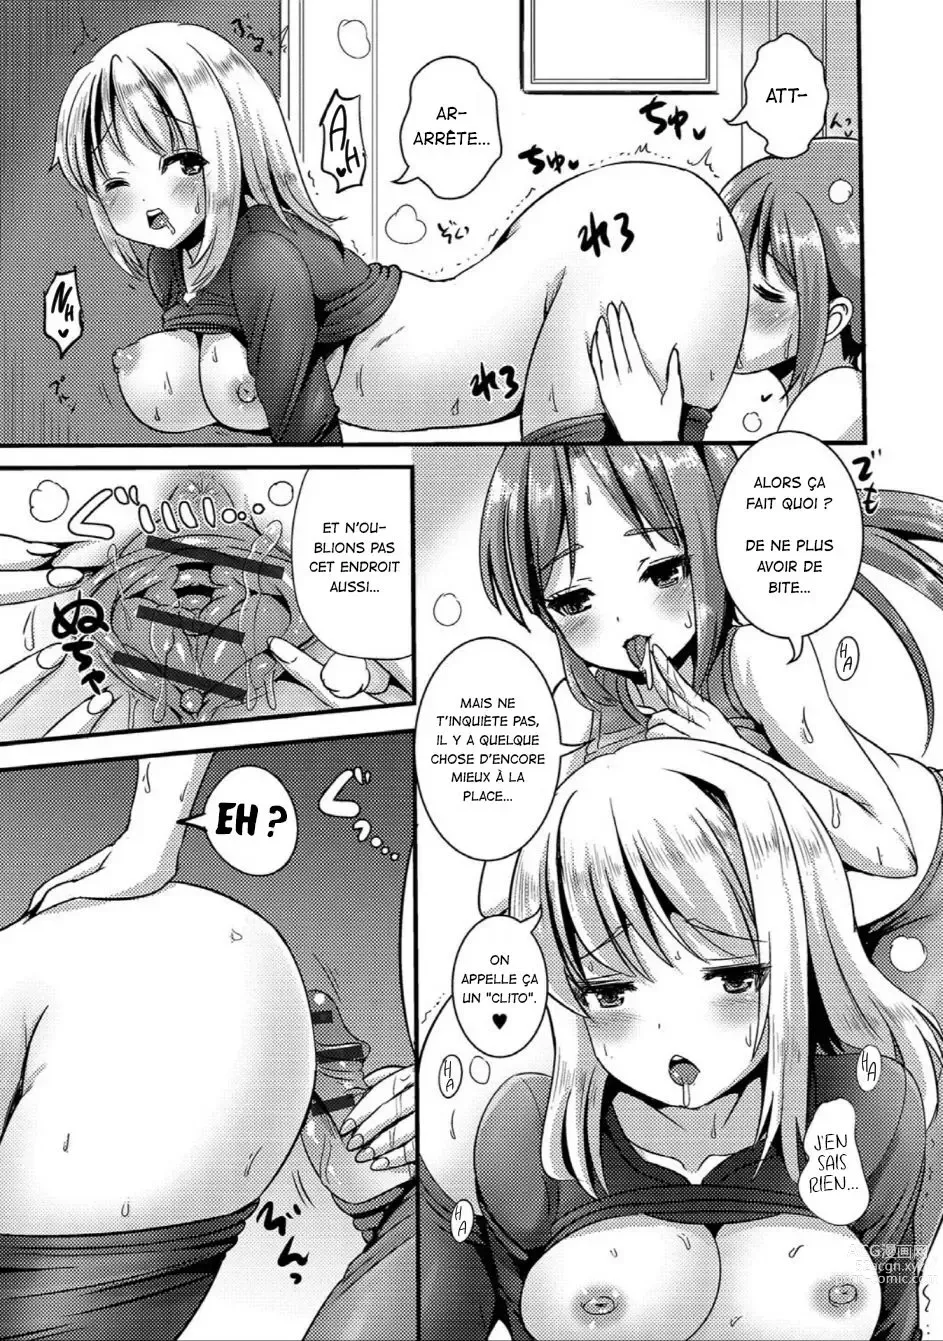 Page 11 of manga TS Tights